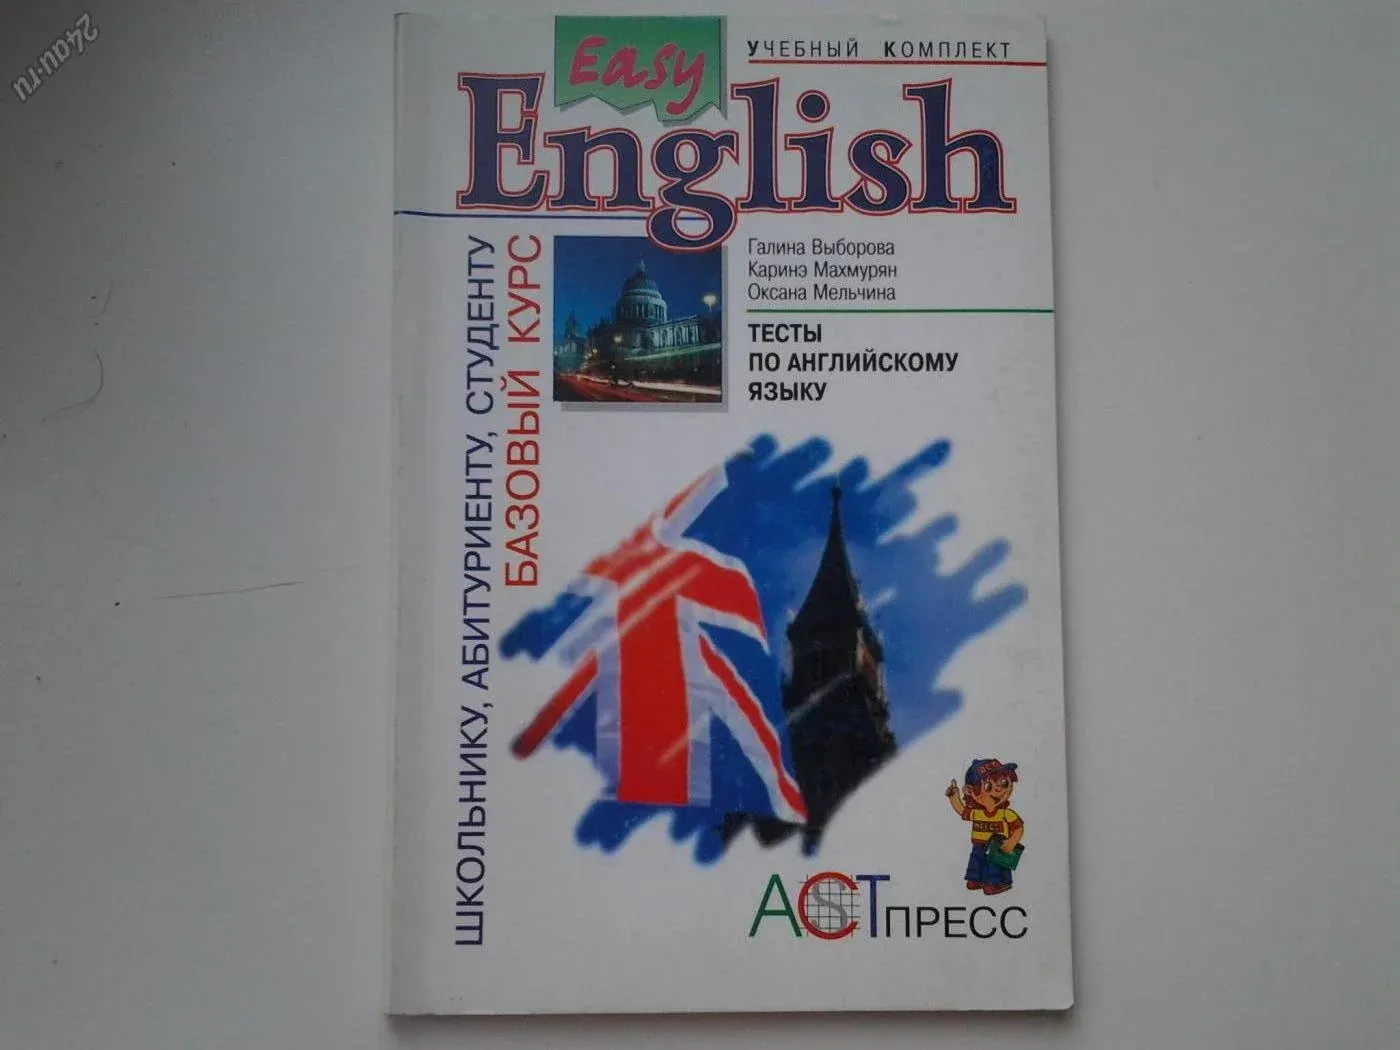 Решебник по английскому 9 повышенный. ИЗИ Инглиш учебник. Выборова easy English. Easy English базовый курс. Easy English учебник Выборова.